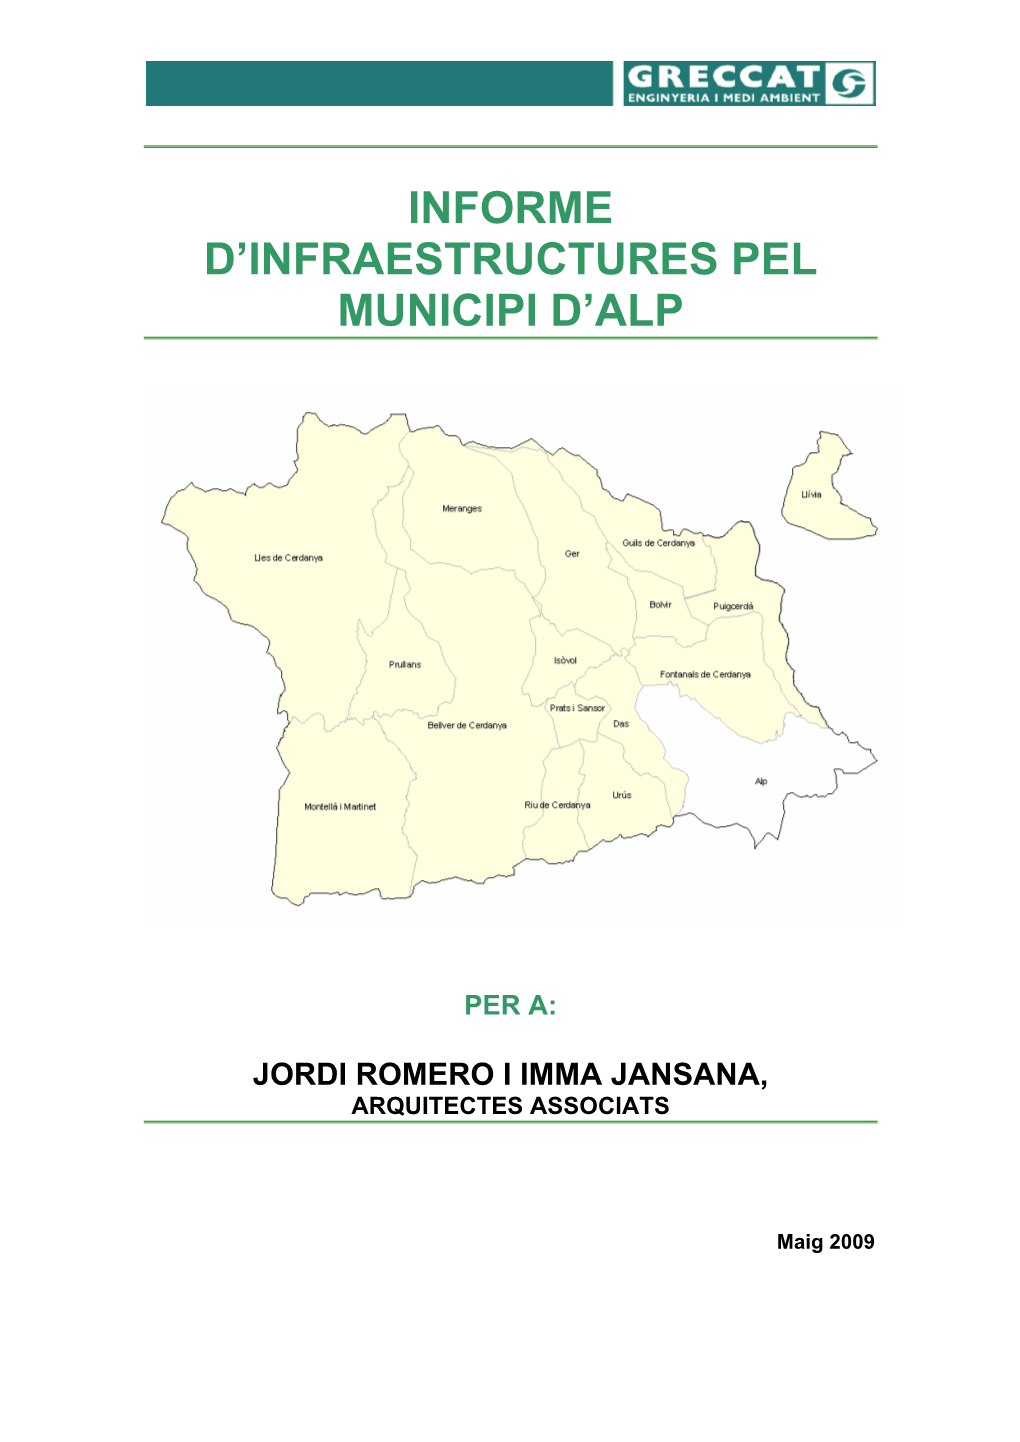 Informe D'infraestructures Pel Municipi D'alp